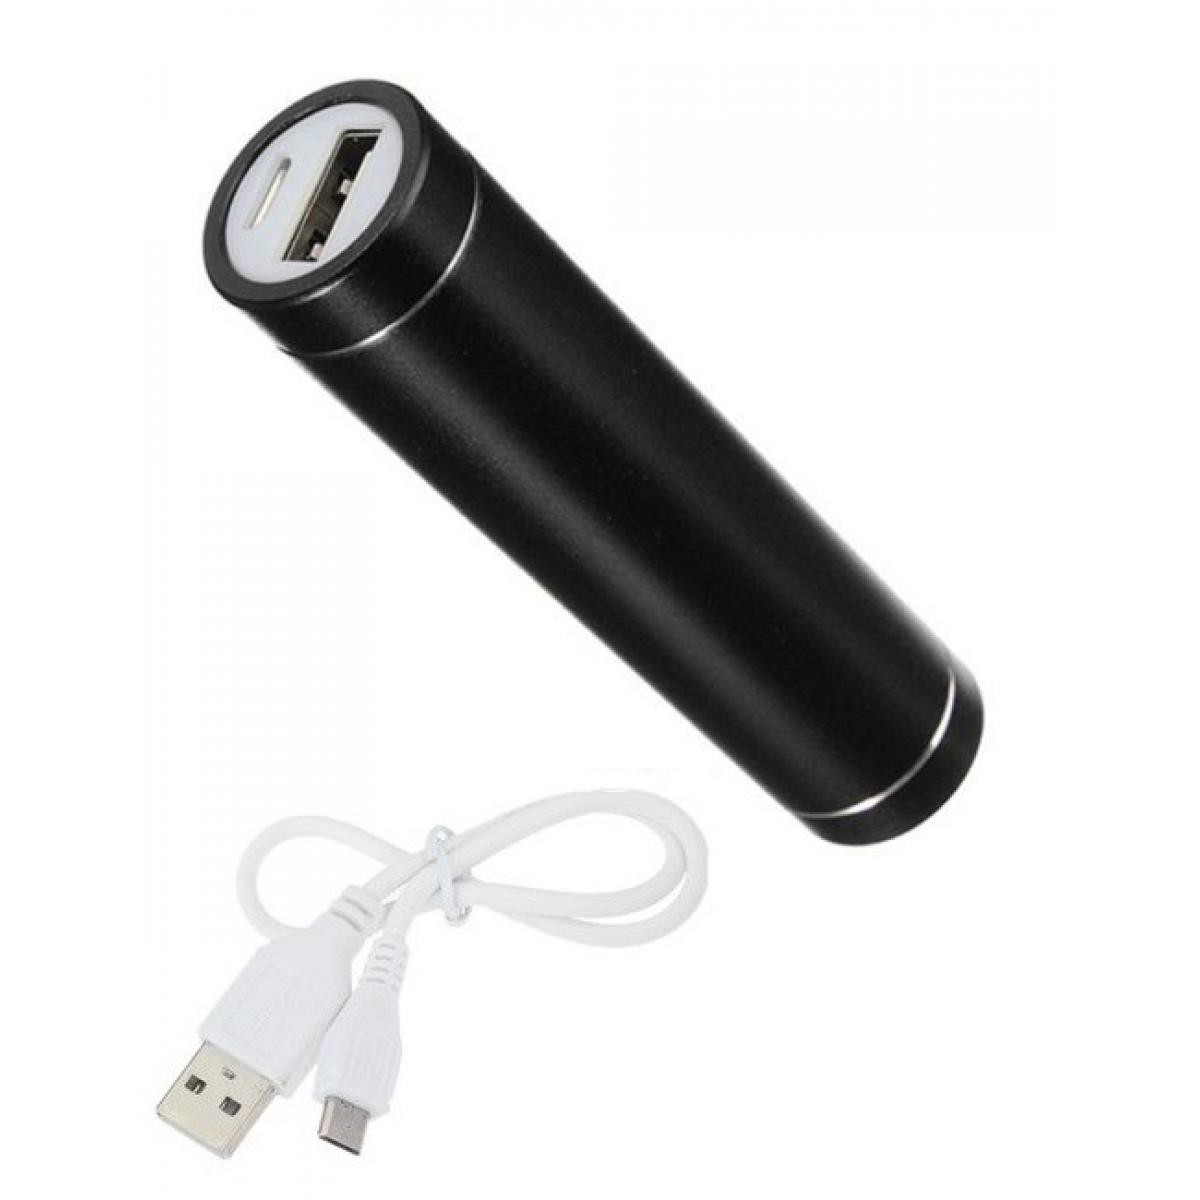 Shot - Batterie Chargeur Externe pour WIKO Y80 Power Bank 2600mAh avec Cable USB/Mirco USB Secours Telephon (NOIR) - Chargeur secteur téléphone